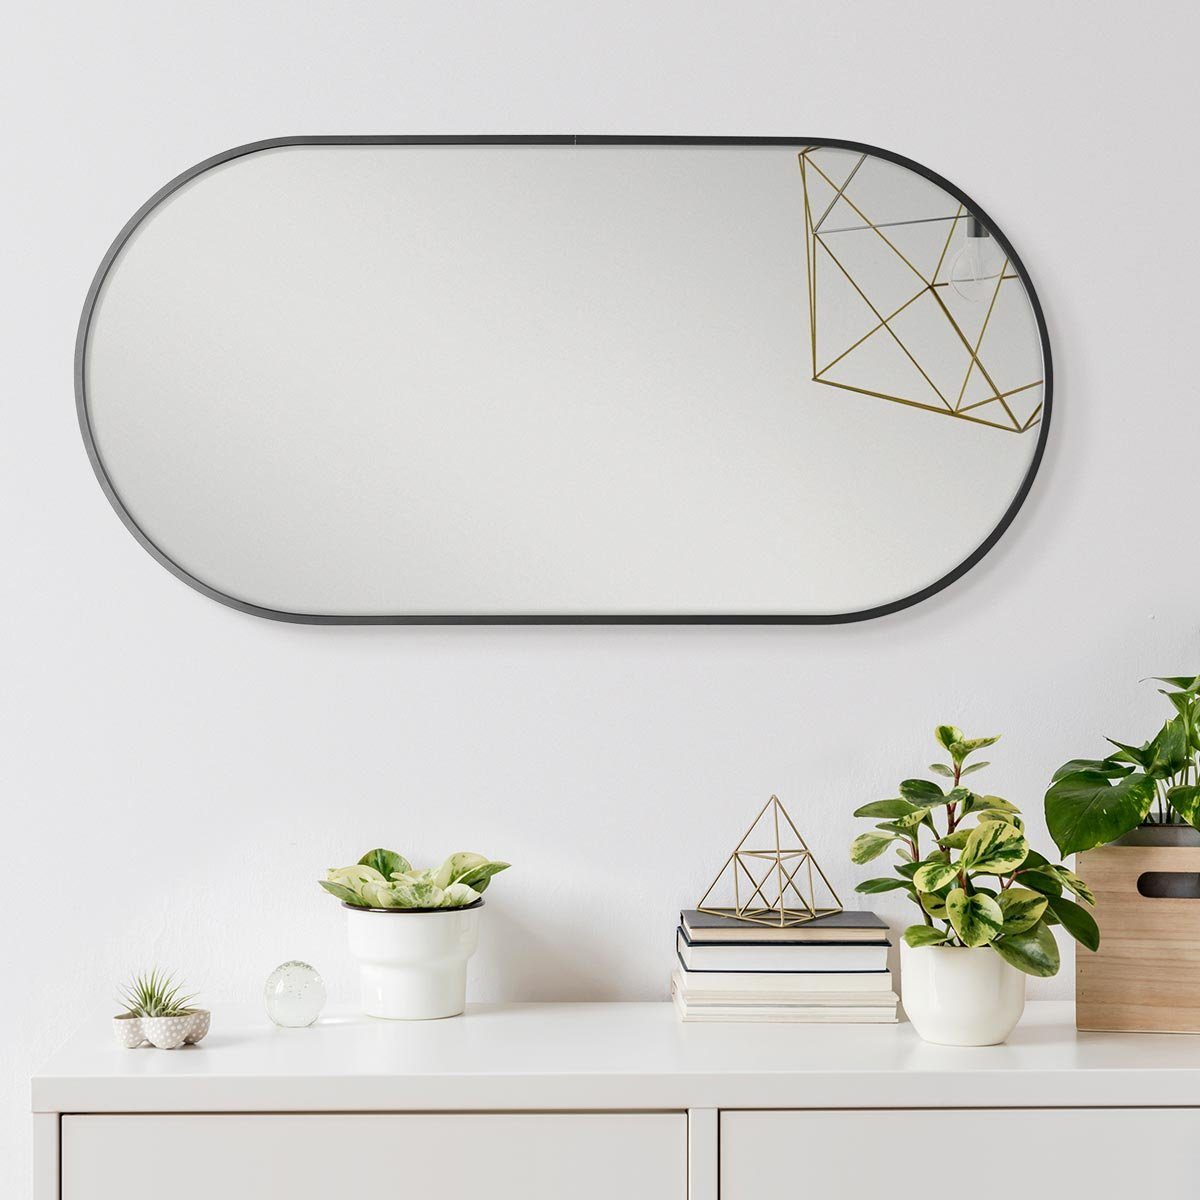 Metallrahmen mit Spiegel Wandspiegel cm Schwarz, PHOTOLINI 40x80 in schmalem ovaler